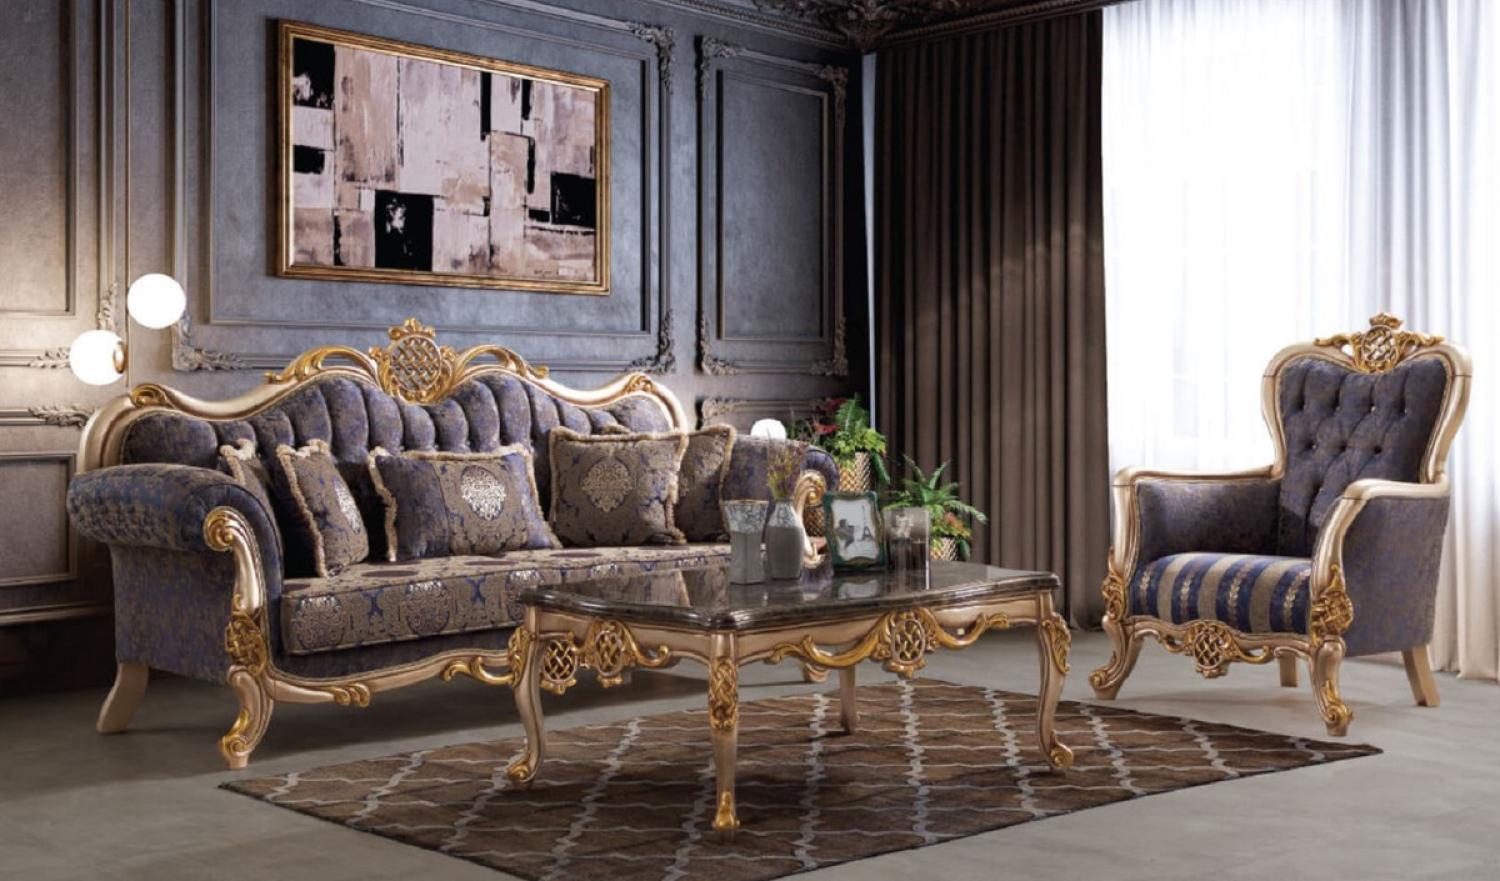 Casa Padrino Luxus Barock Wohnzimmer Set Blau / Silber / Gold - 2 Sofas & 2 Sessel & 1 Couchtisch - Handgefertigte Wohnzimmer Möbel im Barockstil - Edel & Prunkvoll Bild 1